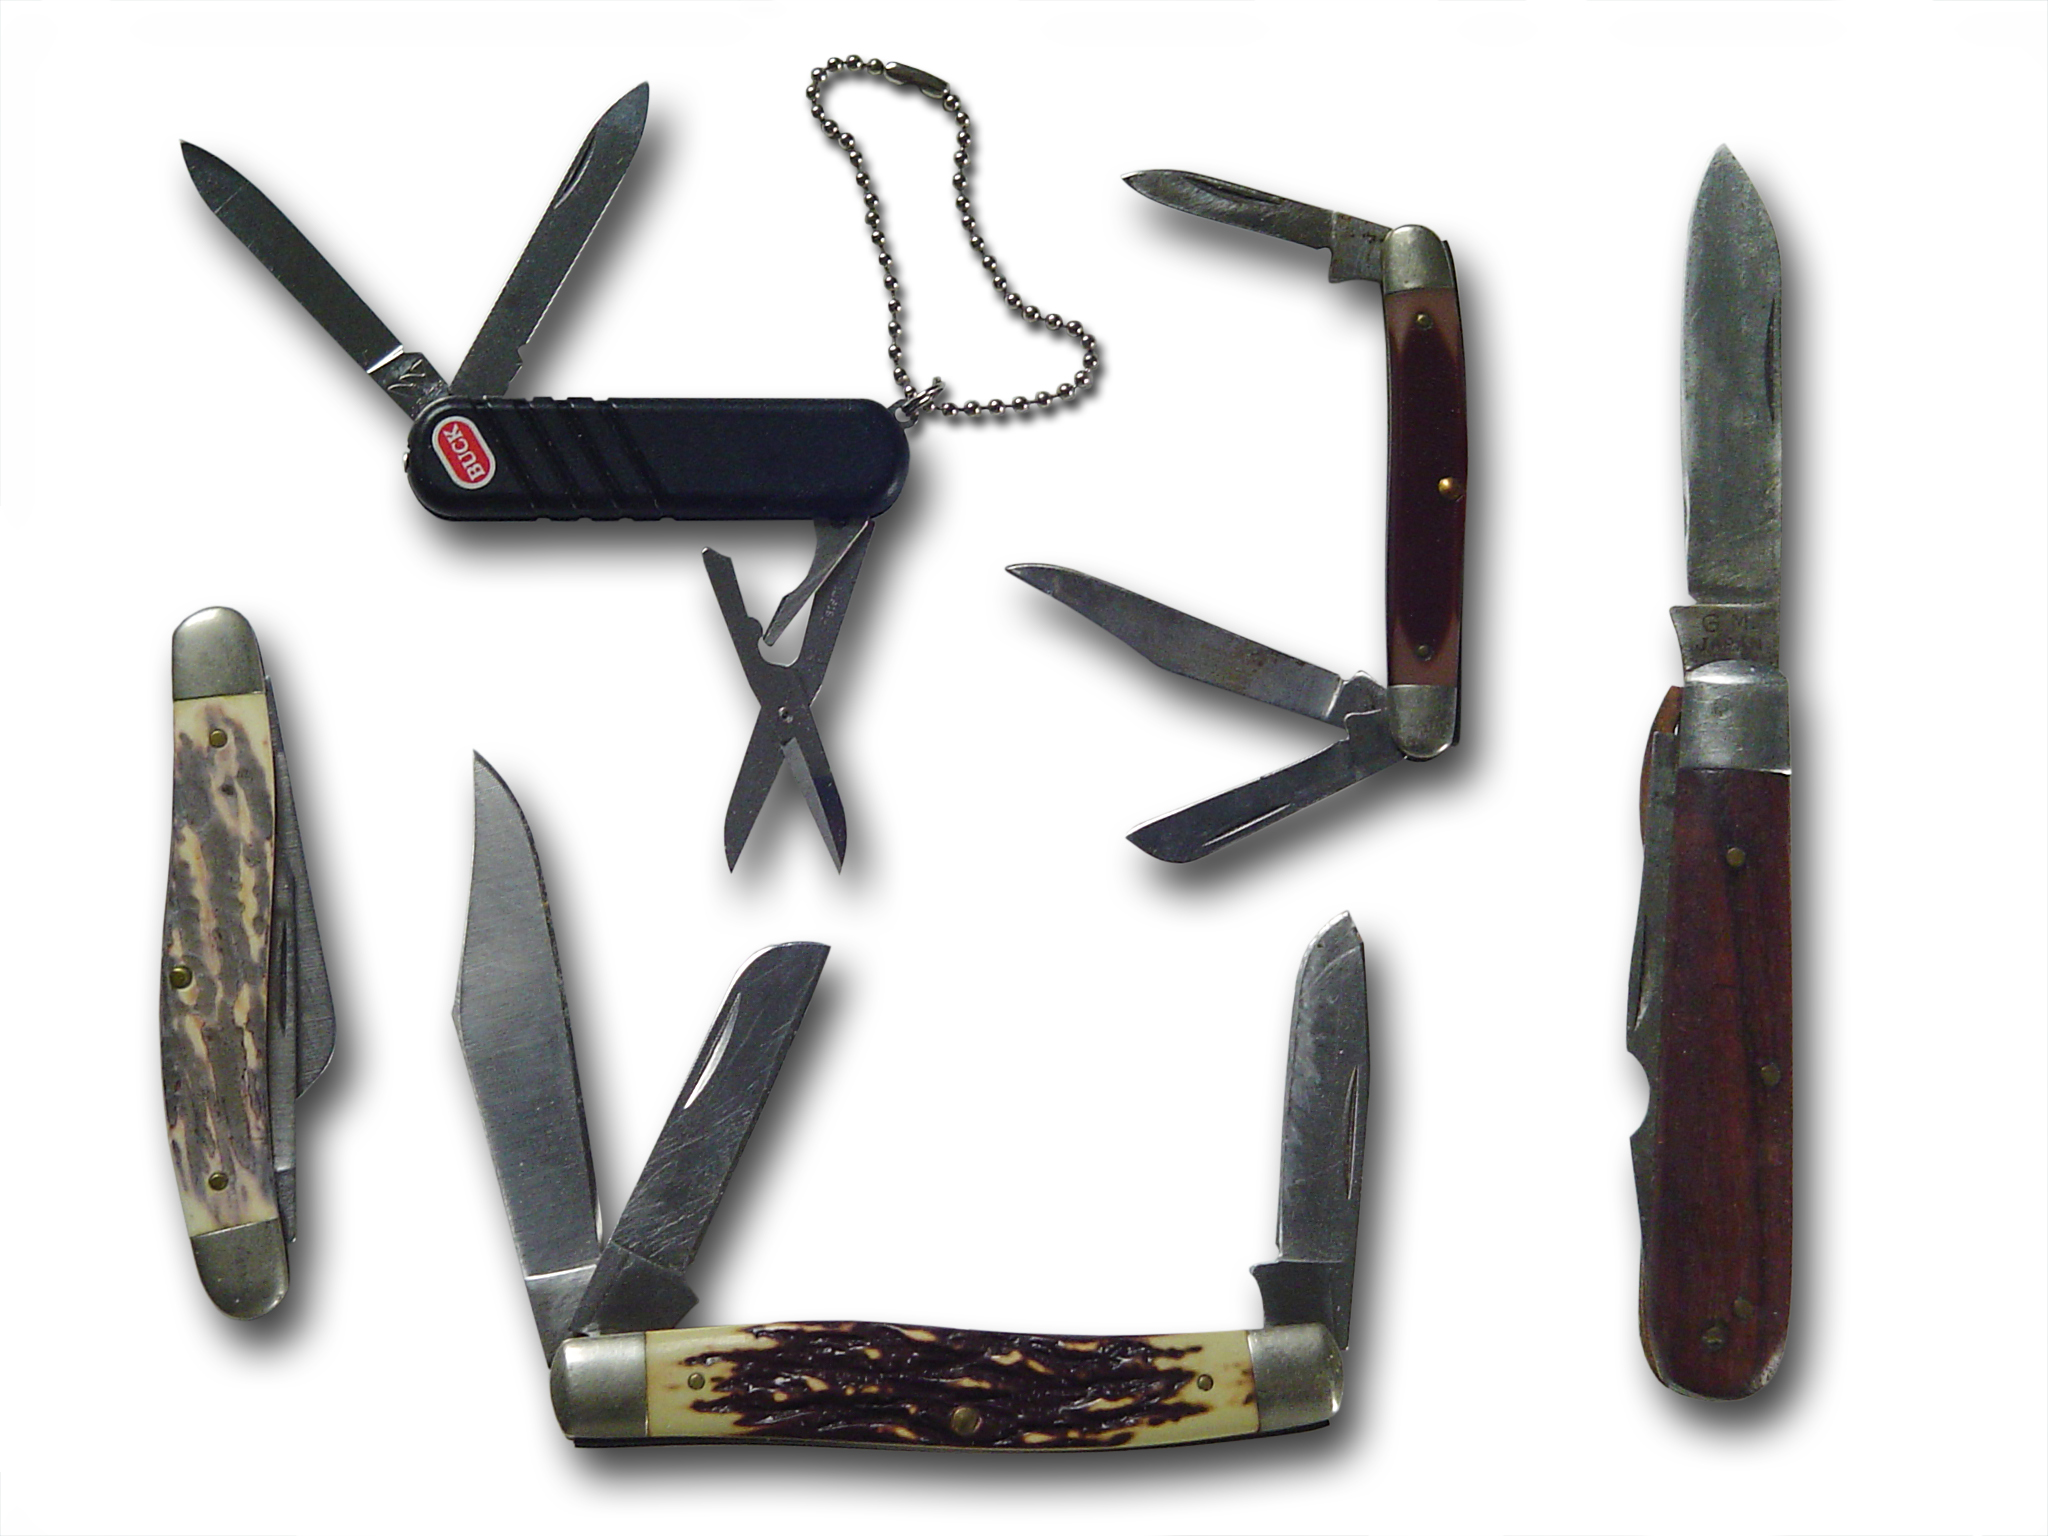 Taschenmesser mit Wellenschliff und Clip, Multitool-Messer mit